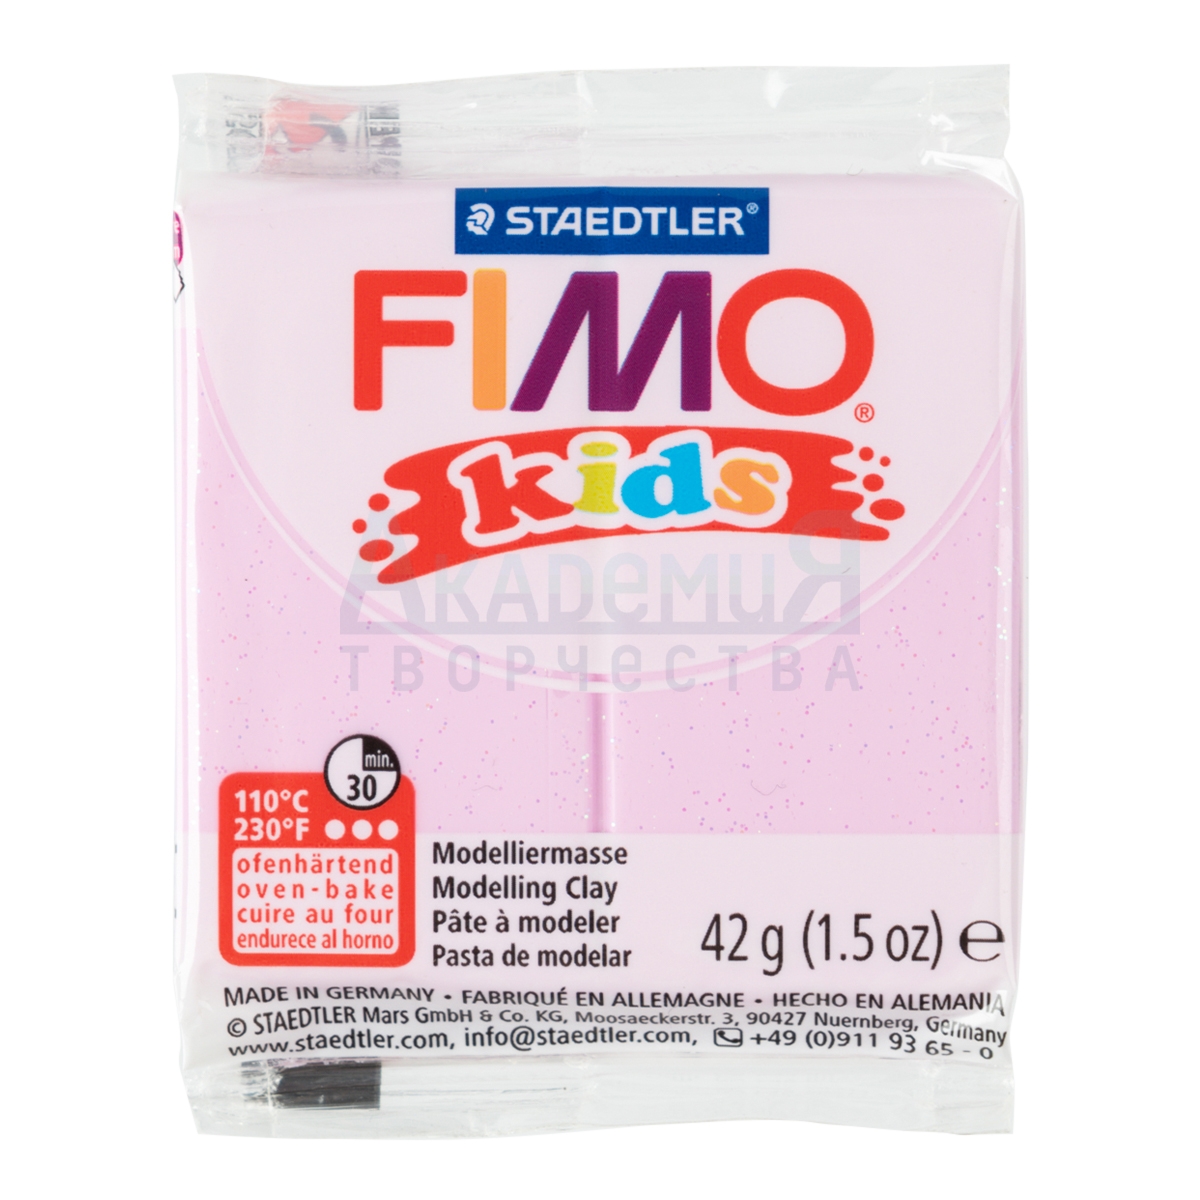 FIMO kids   8030-206   -